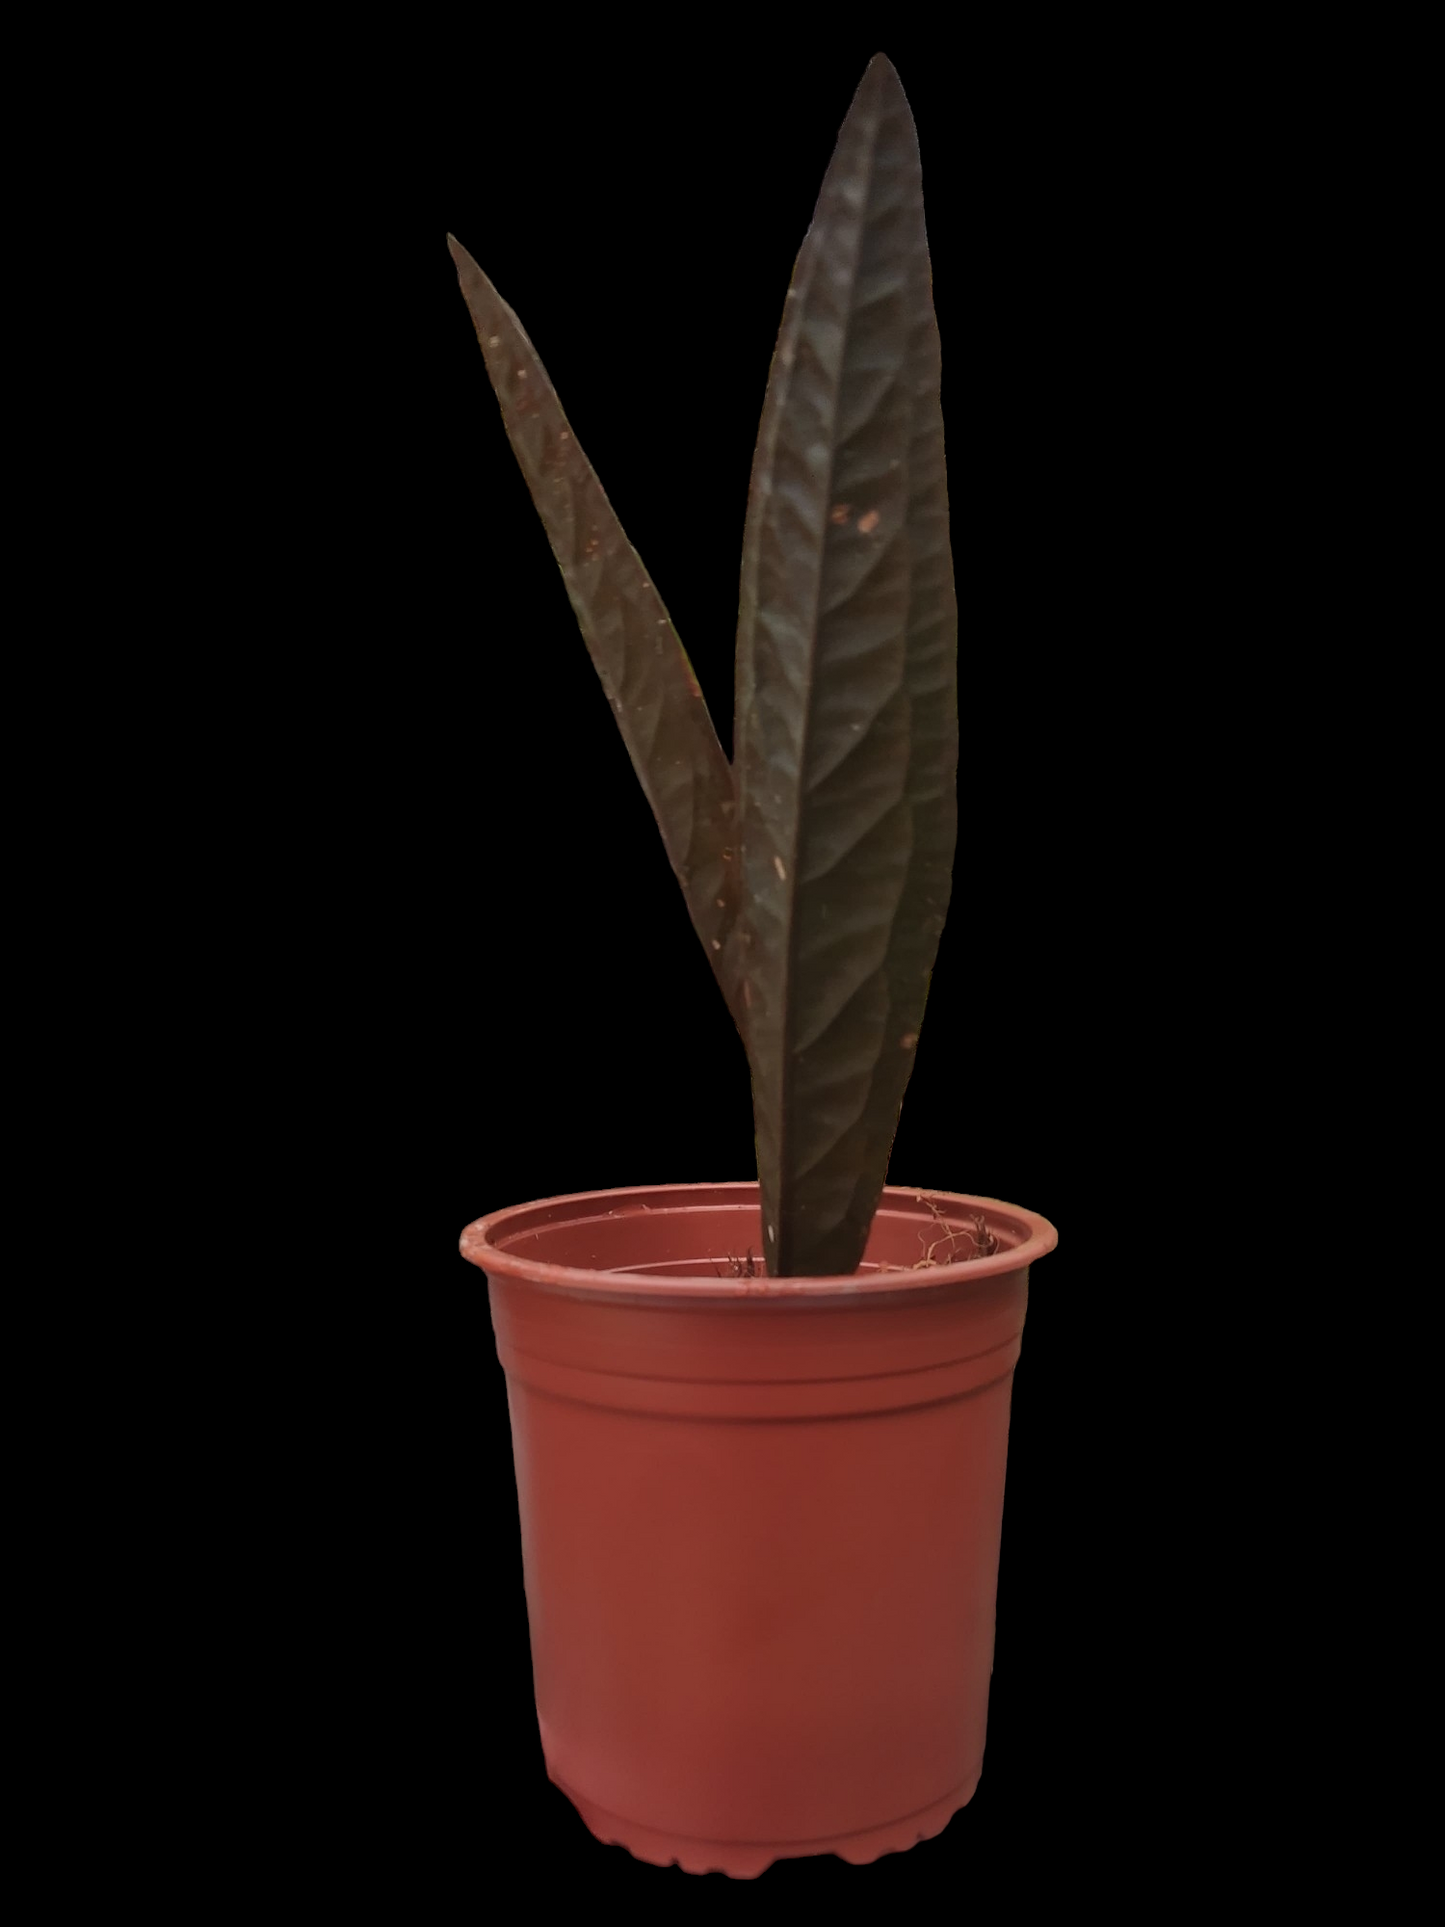 Ultra Rare Anthurium Willifordi (EXACT PLANT)